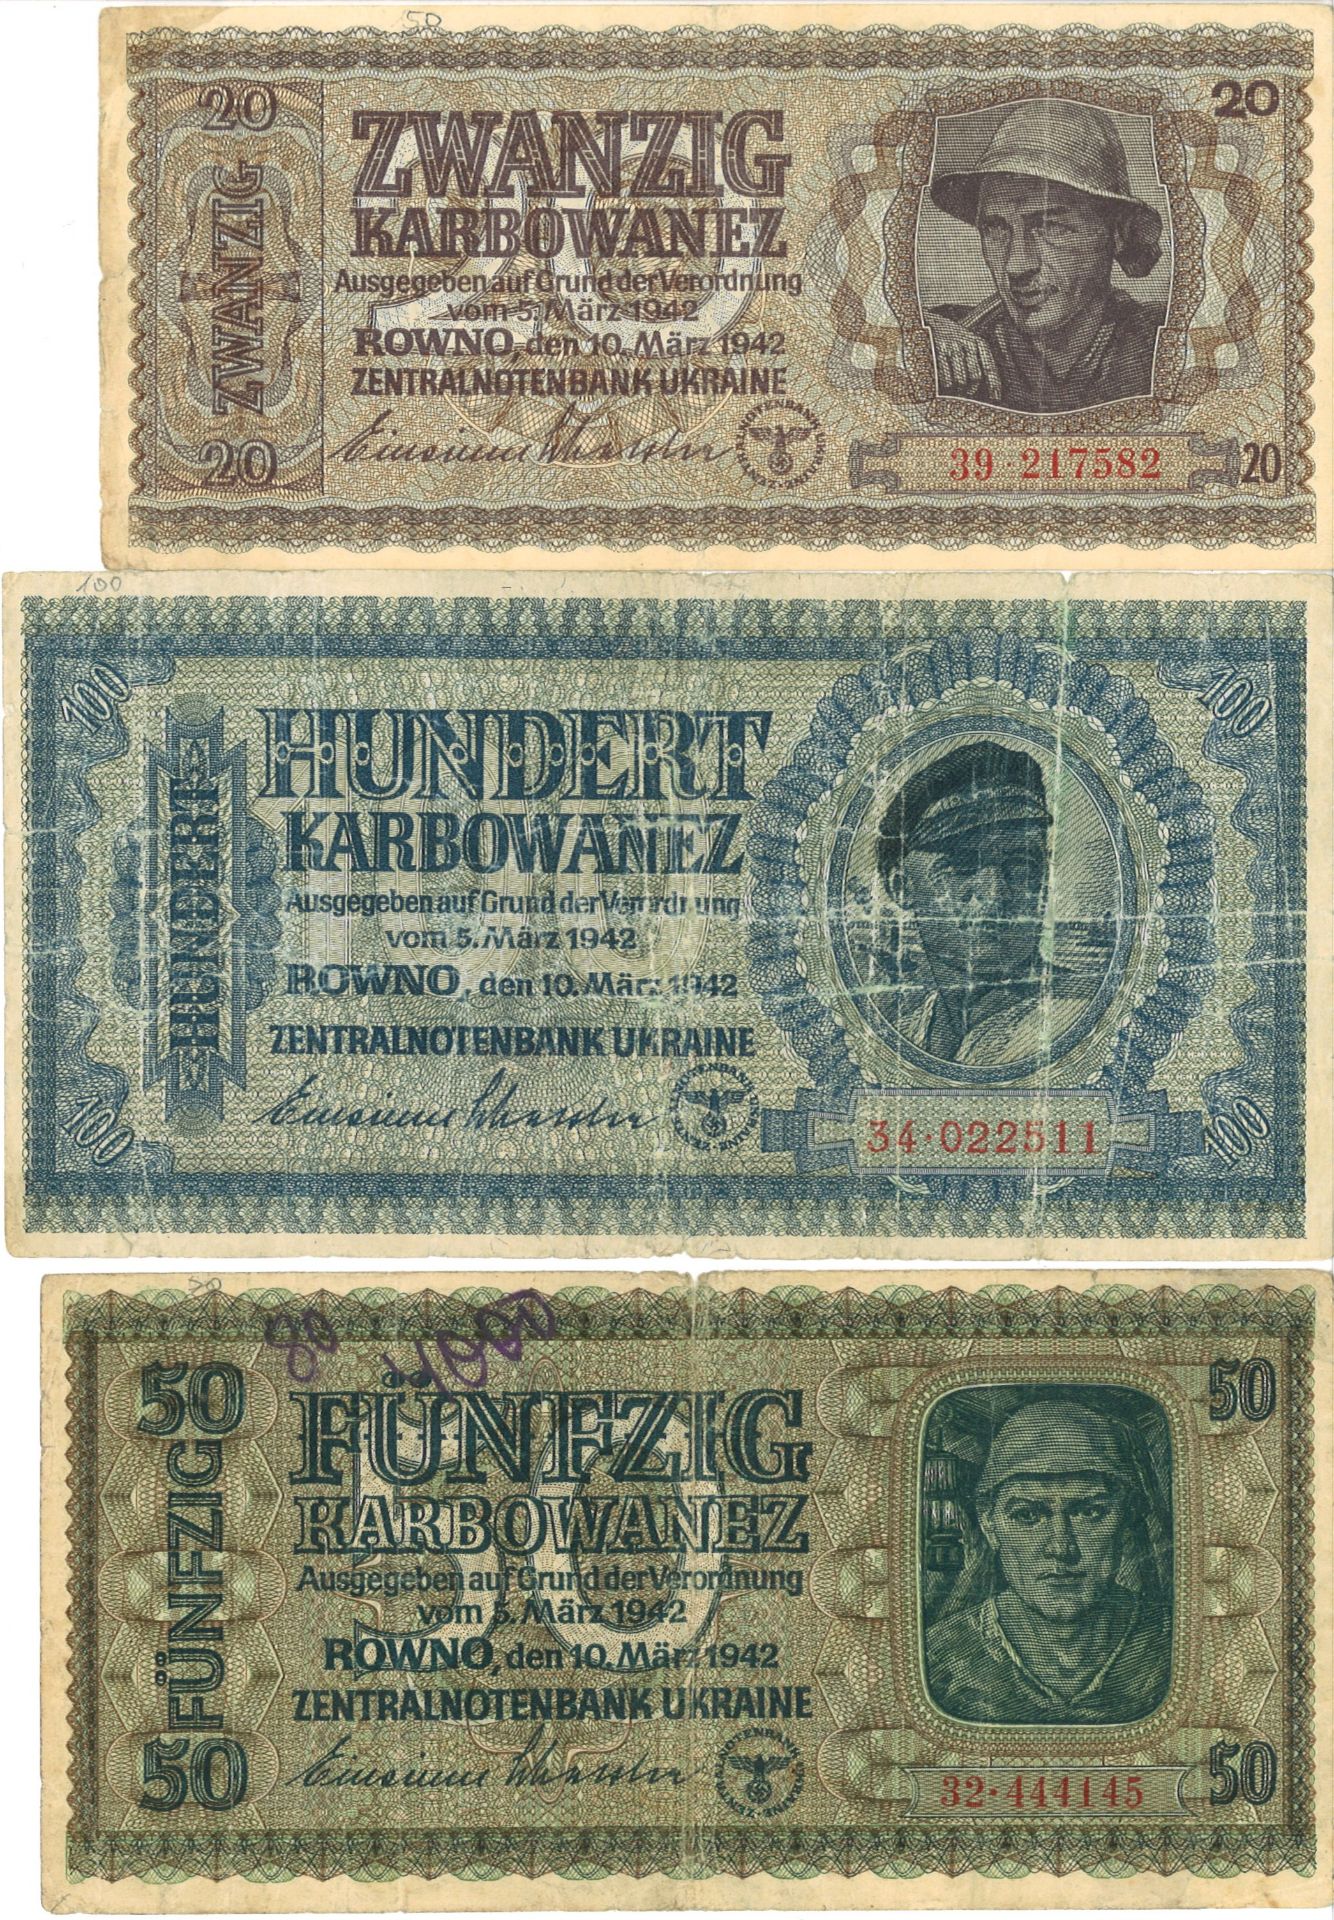 Lot Banknoten Ukraine, Deutsche Besatzung 1942, 100/50/20 Karbowanez, gut bis gebraucht. - Bild 2 aus 2